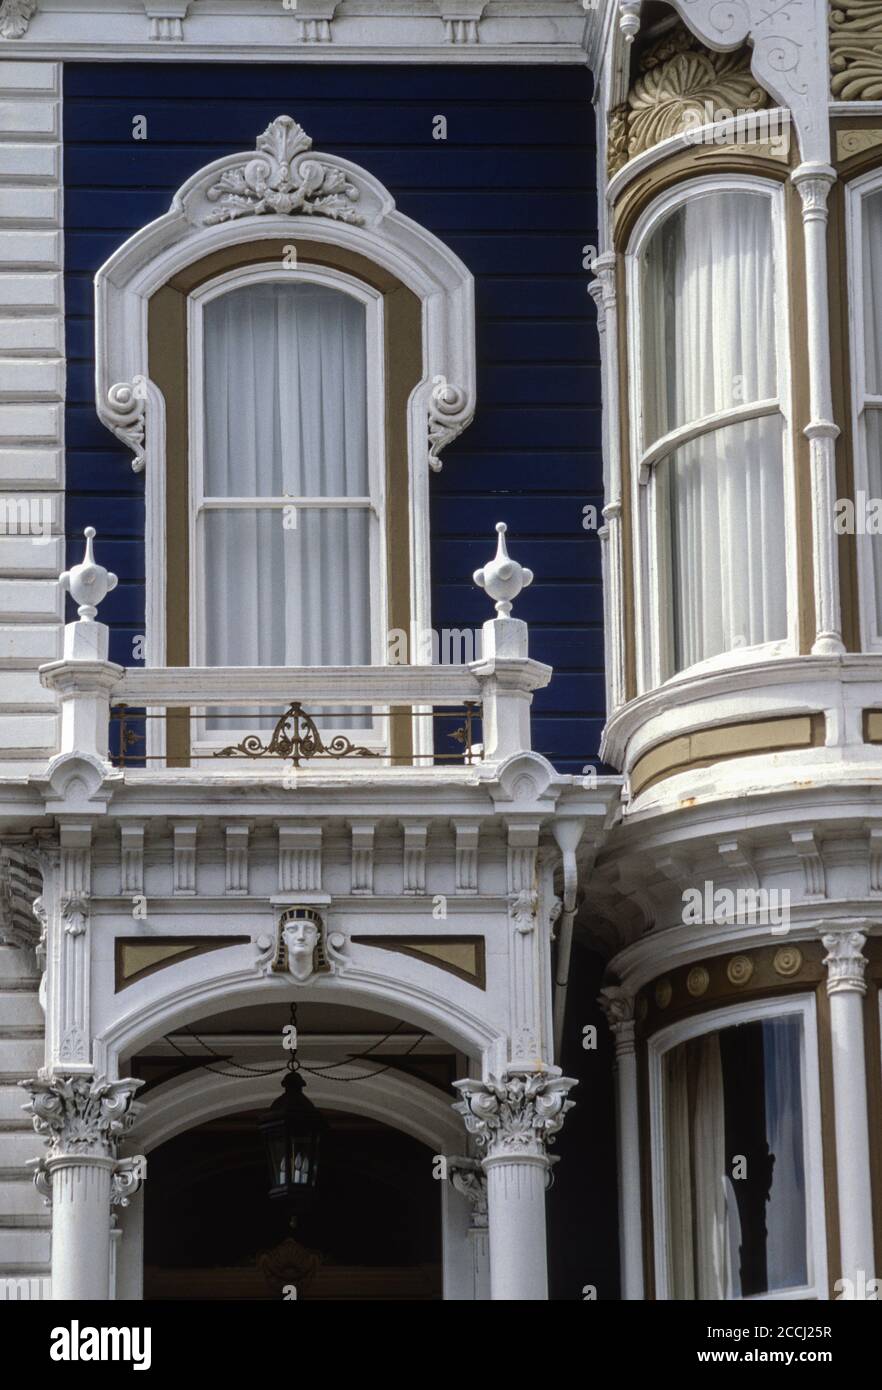 San Francisco, Californie, États-Unis. Pacific Heights, motif égyptien sur la maison de style victorien, California Street. Banque D'Images